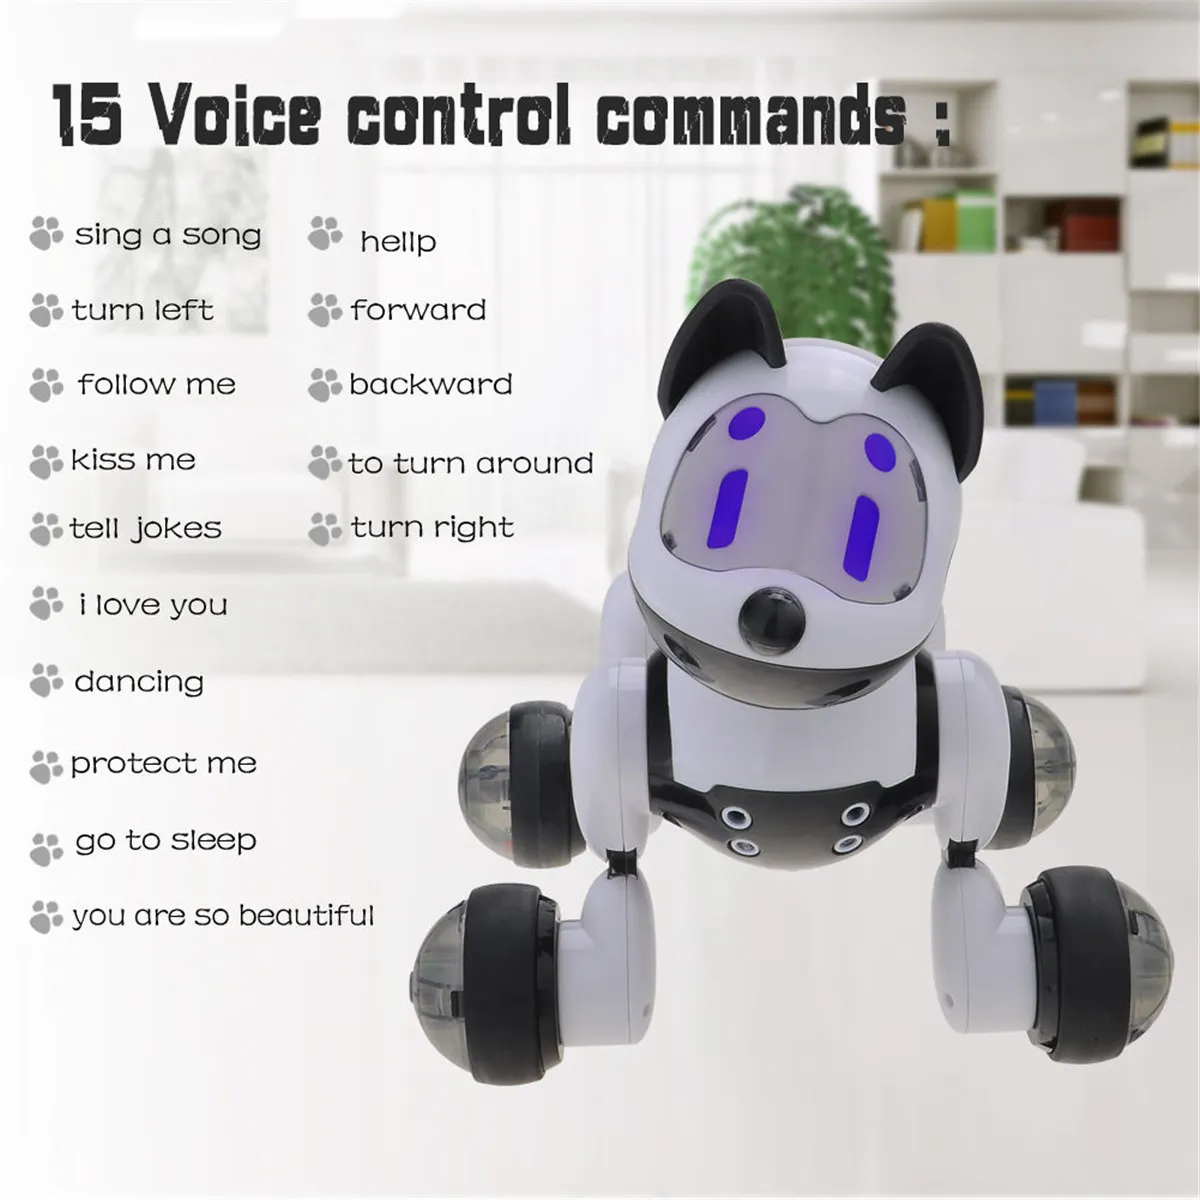 インテリジェントダンスロボットドッグエレクトロニックペットおもちゃ音楽ライトボイスコントロールモードを歌う子供向けスマートドッグロボットギフトおもちゃ2623923